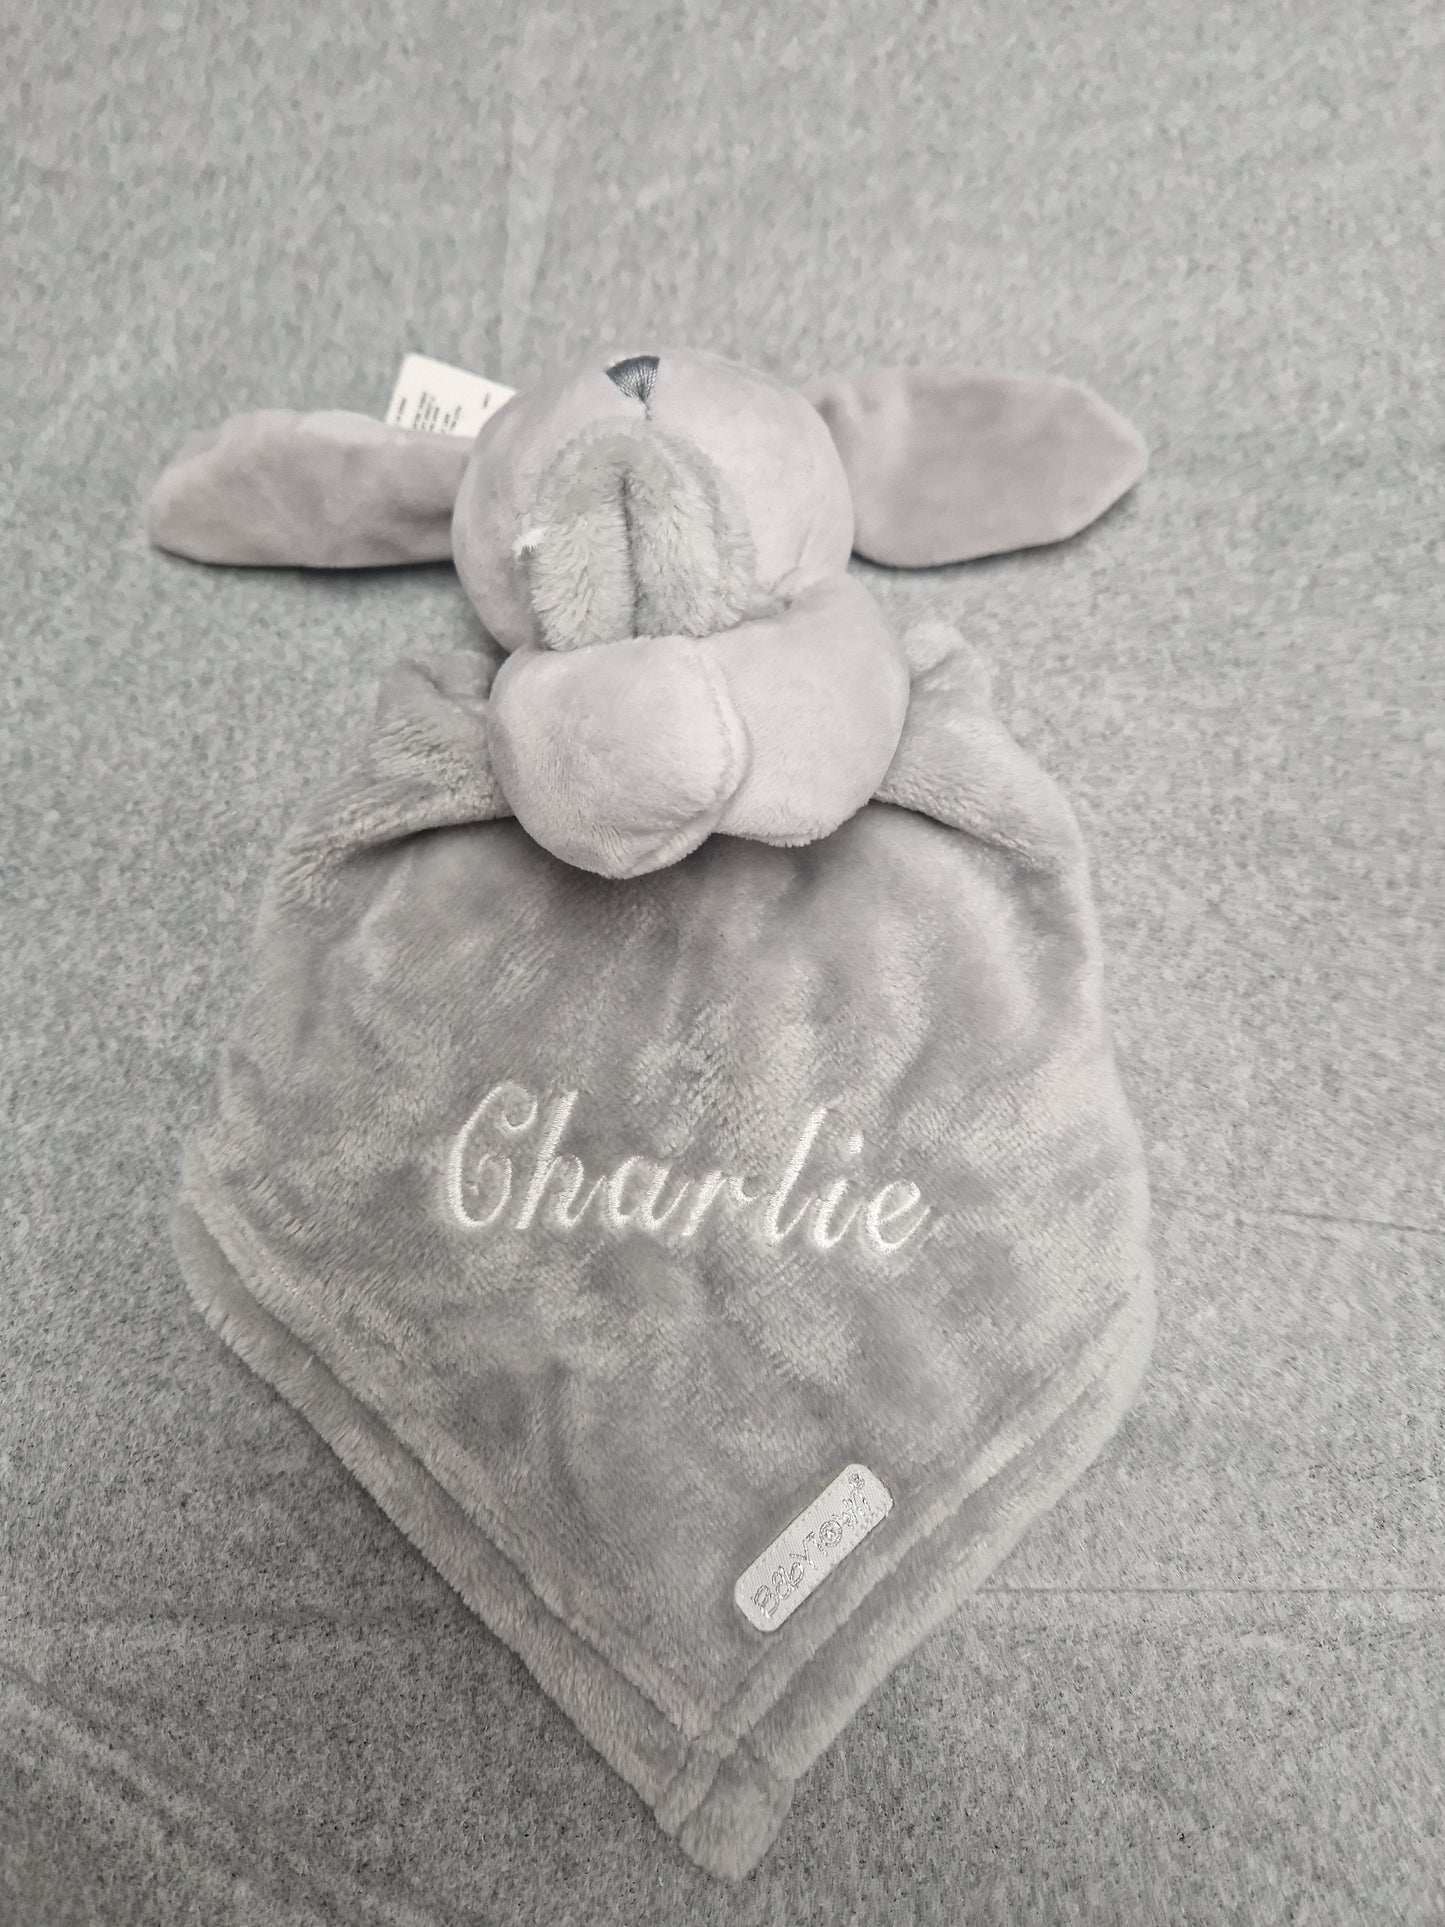 Personalised Baby Babytown Novelty Bunny Comforter